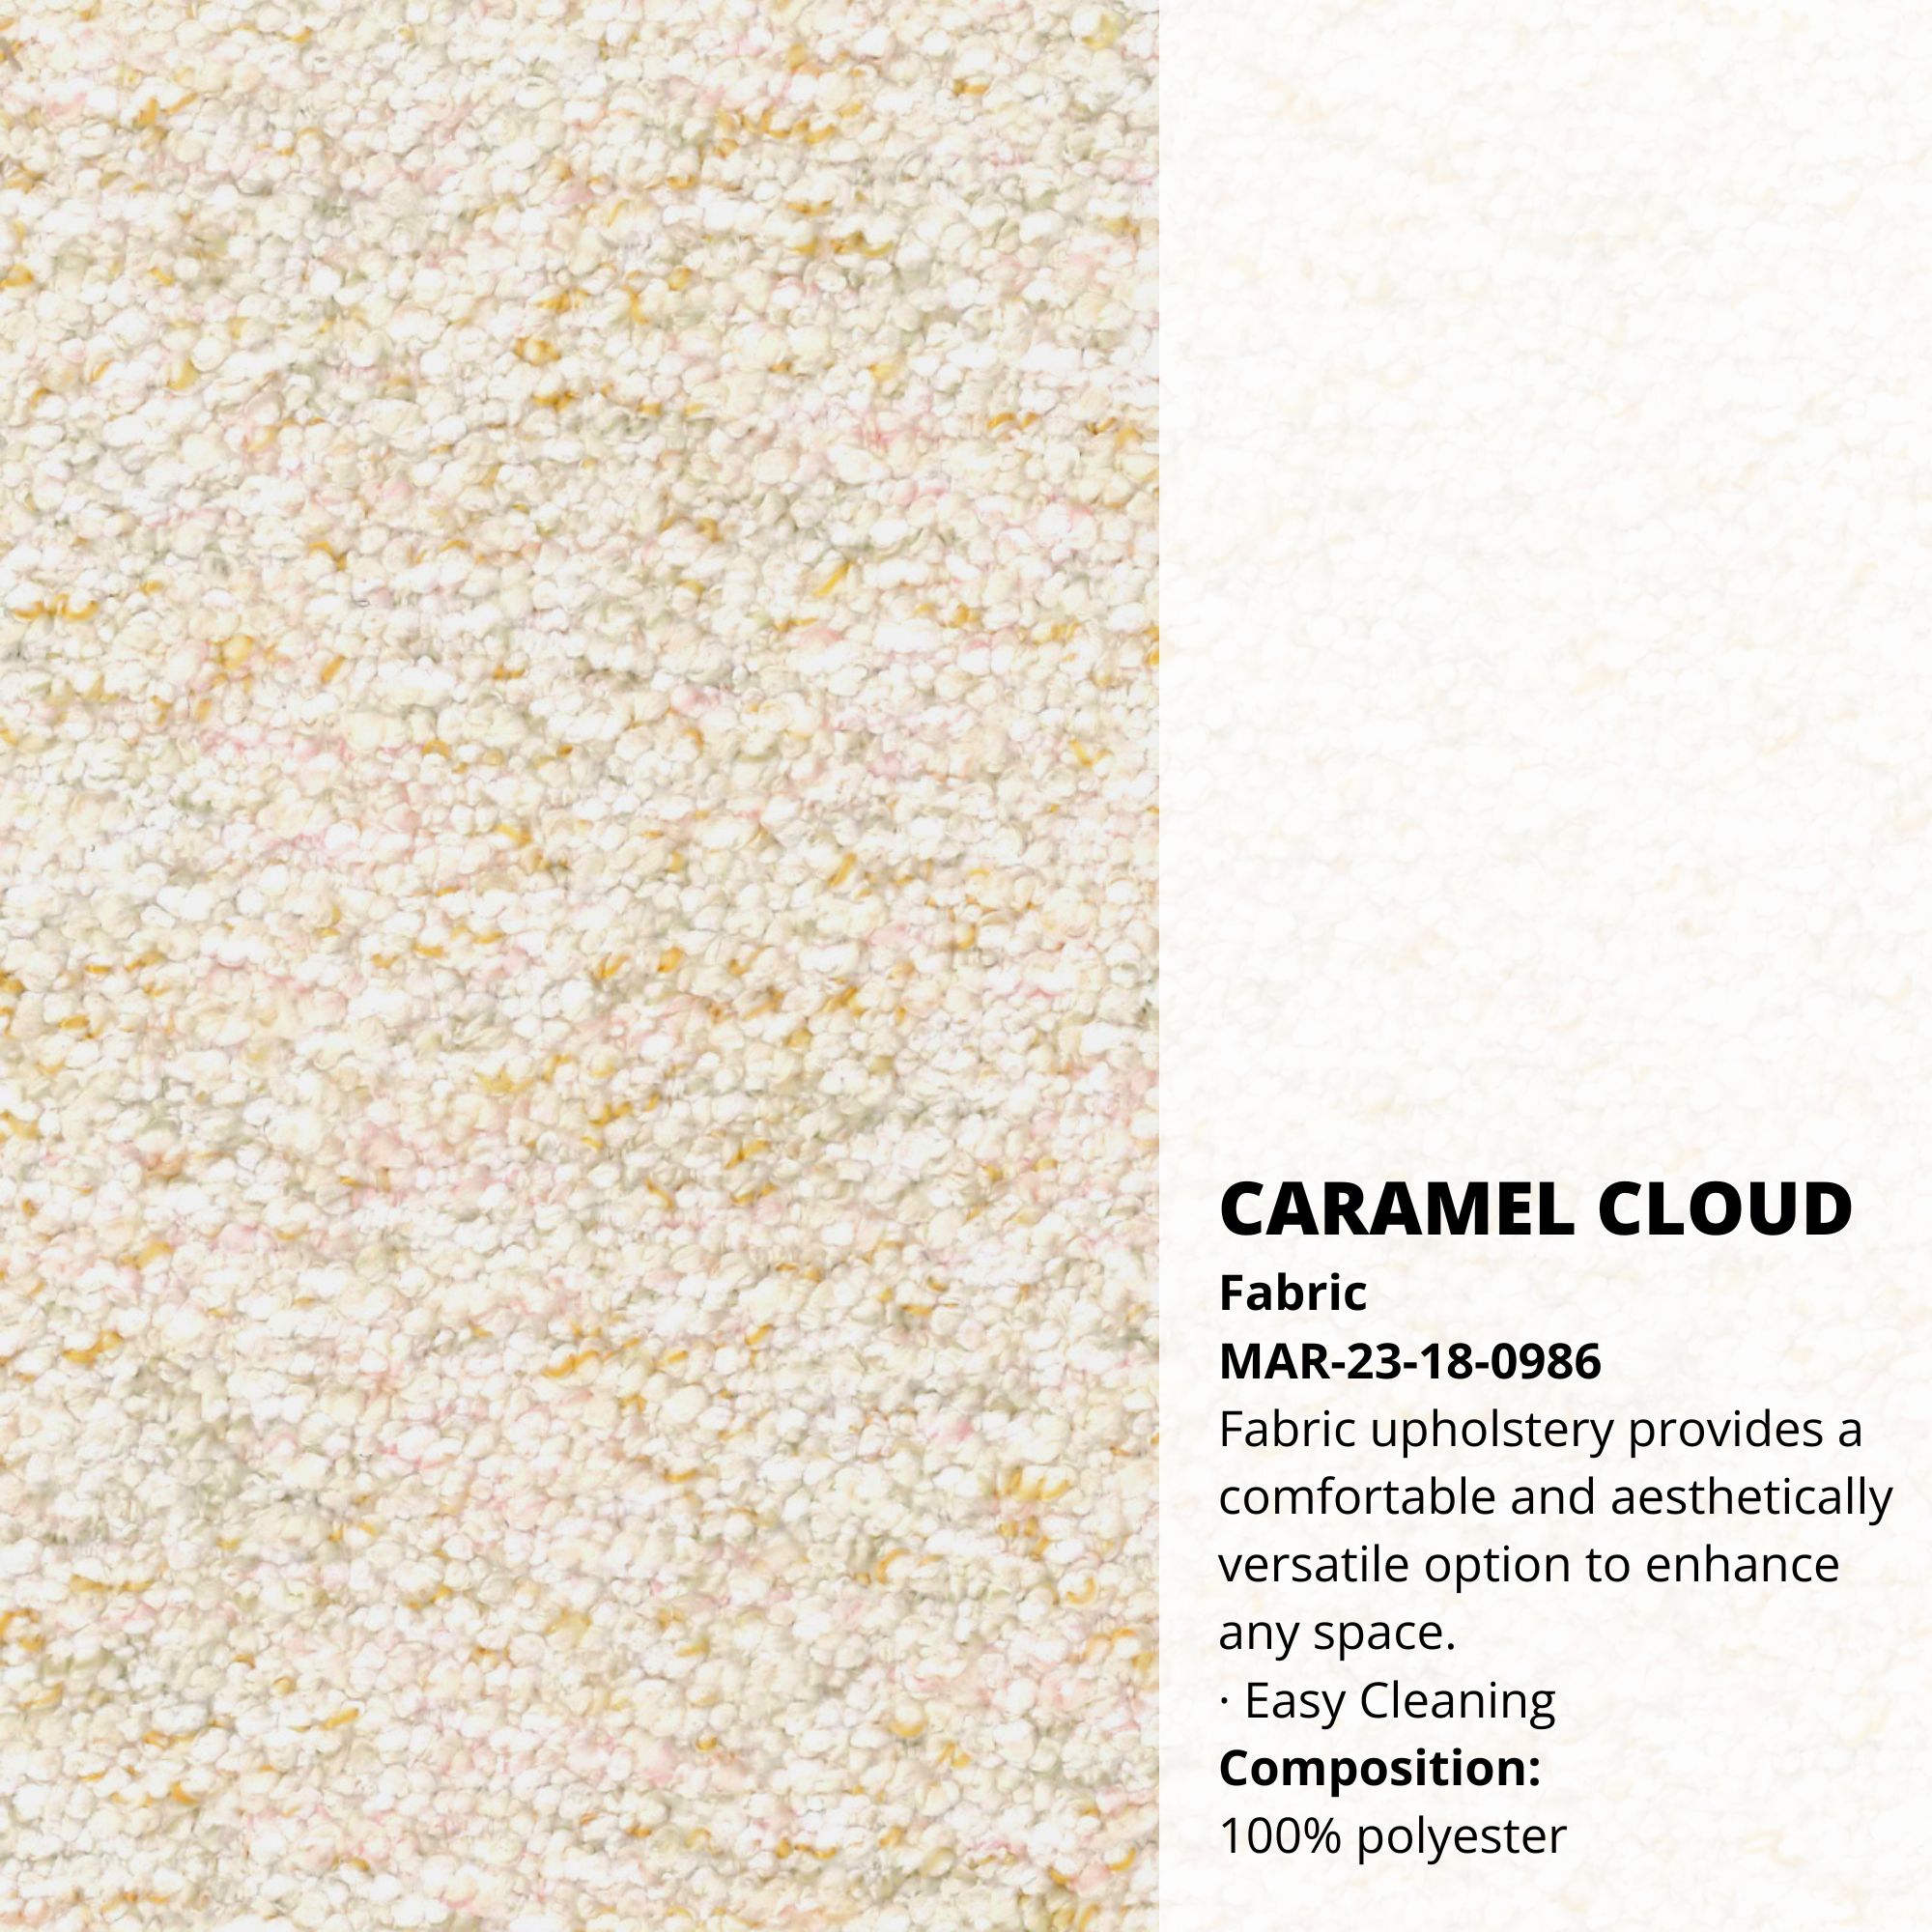 Caramel Cloud